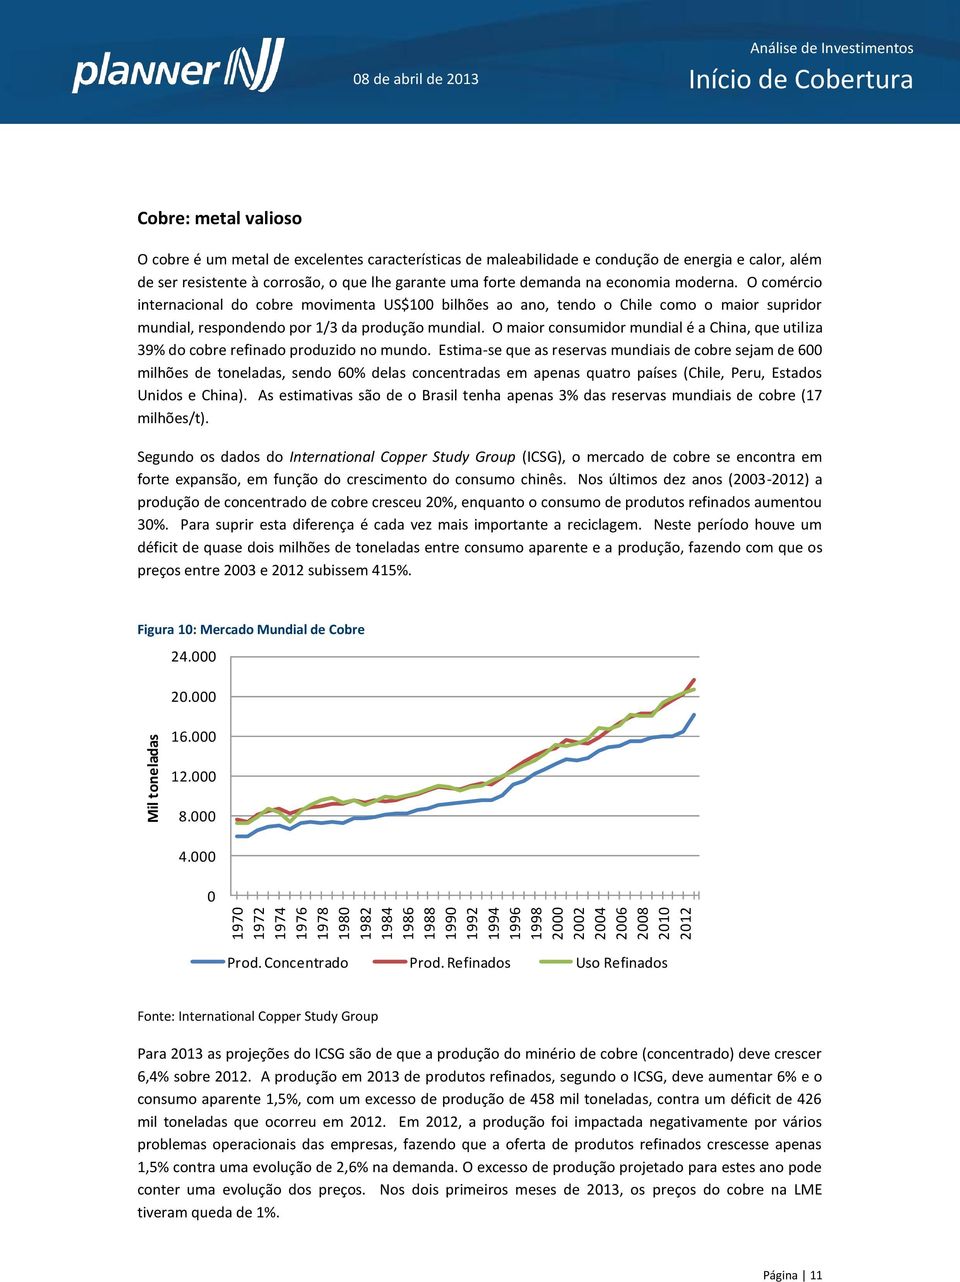 O comércio internacional do cobre movimenta US$100 bilhões ao ano, tendo o Chile como o maior supridor mundial, respondendo por 1/3 da produção mundial.